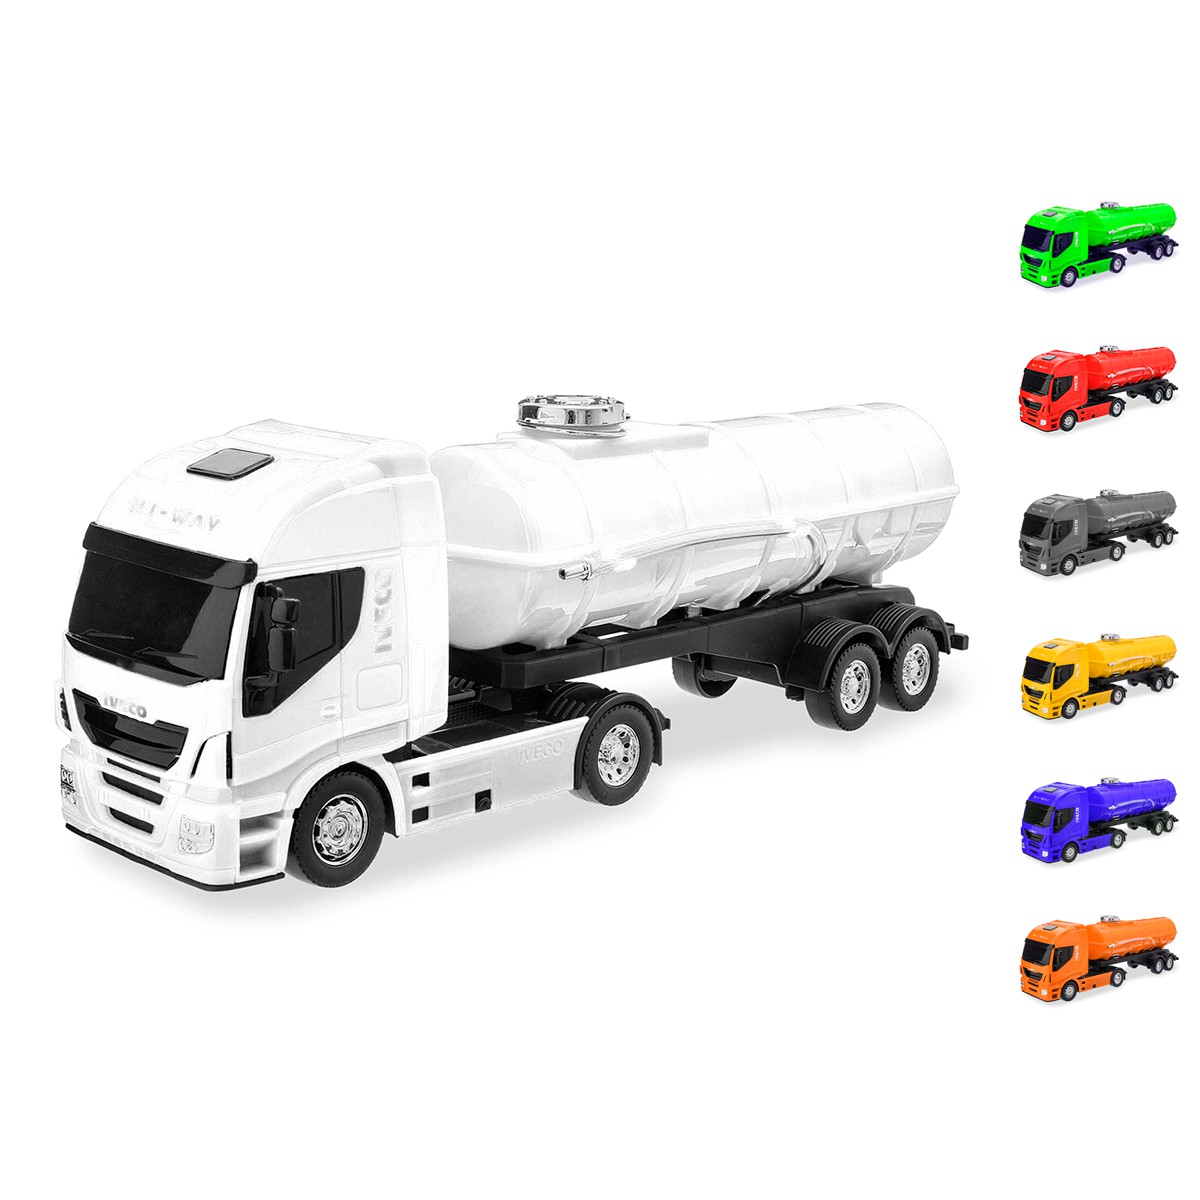 Miniatura Caminhão Brinquedo Infantil Iveco Tanque Gasolina